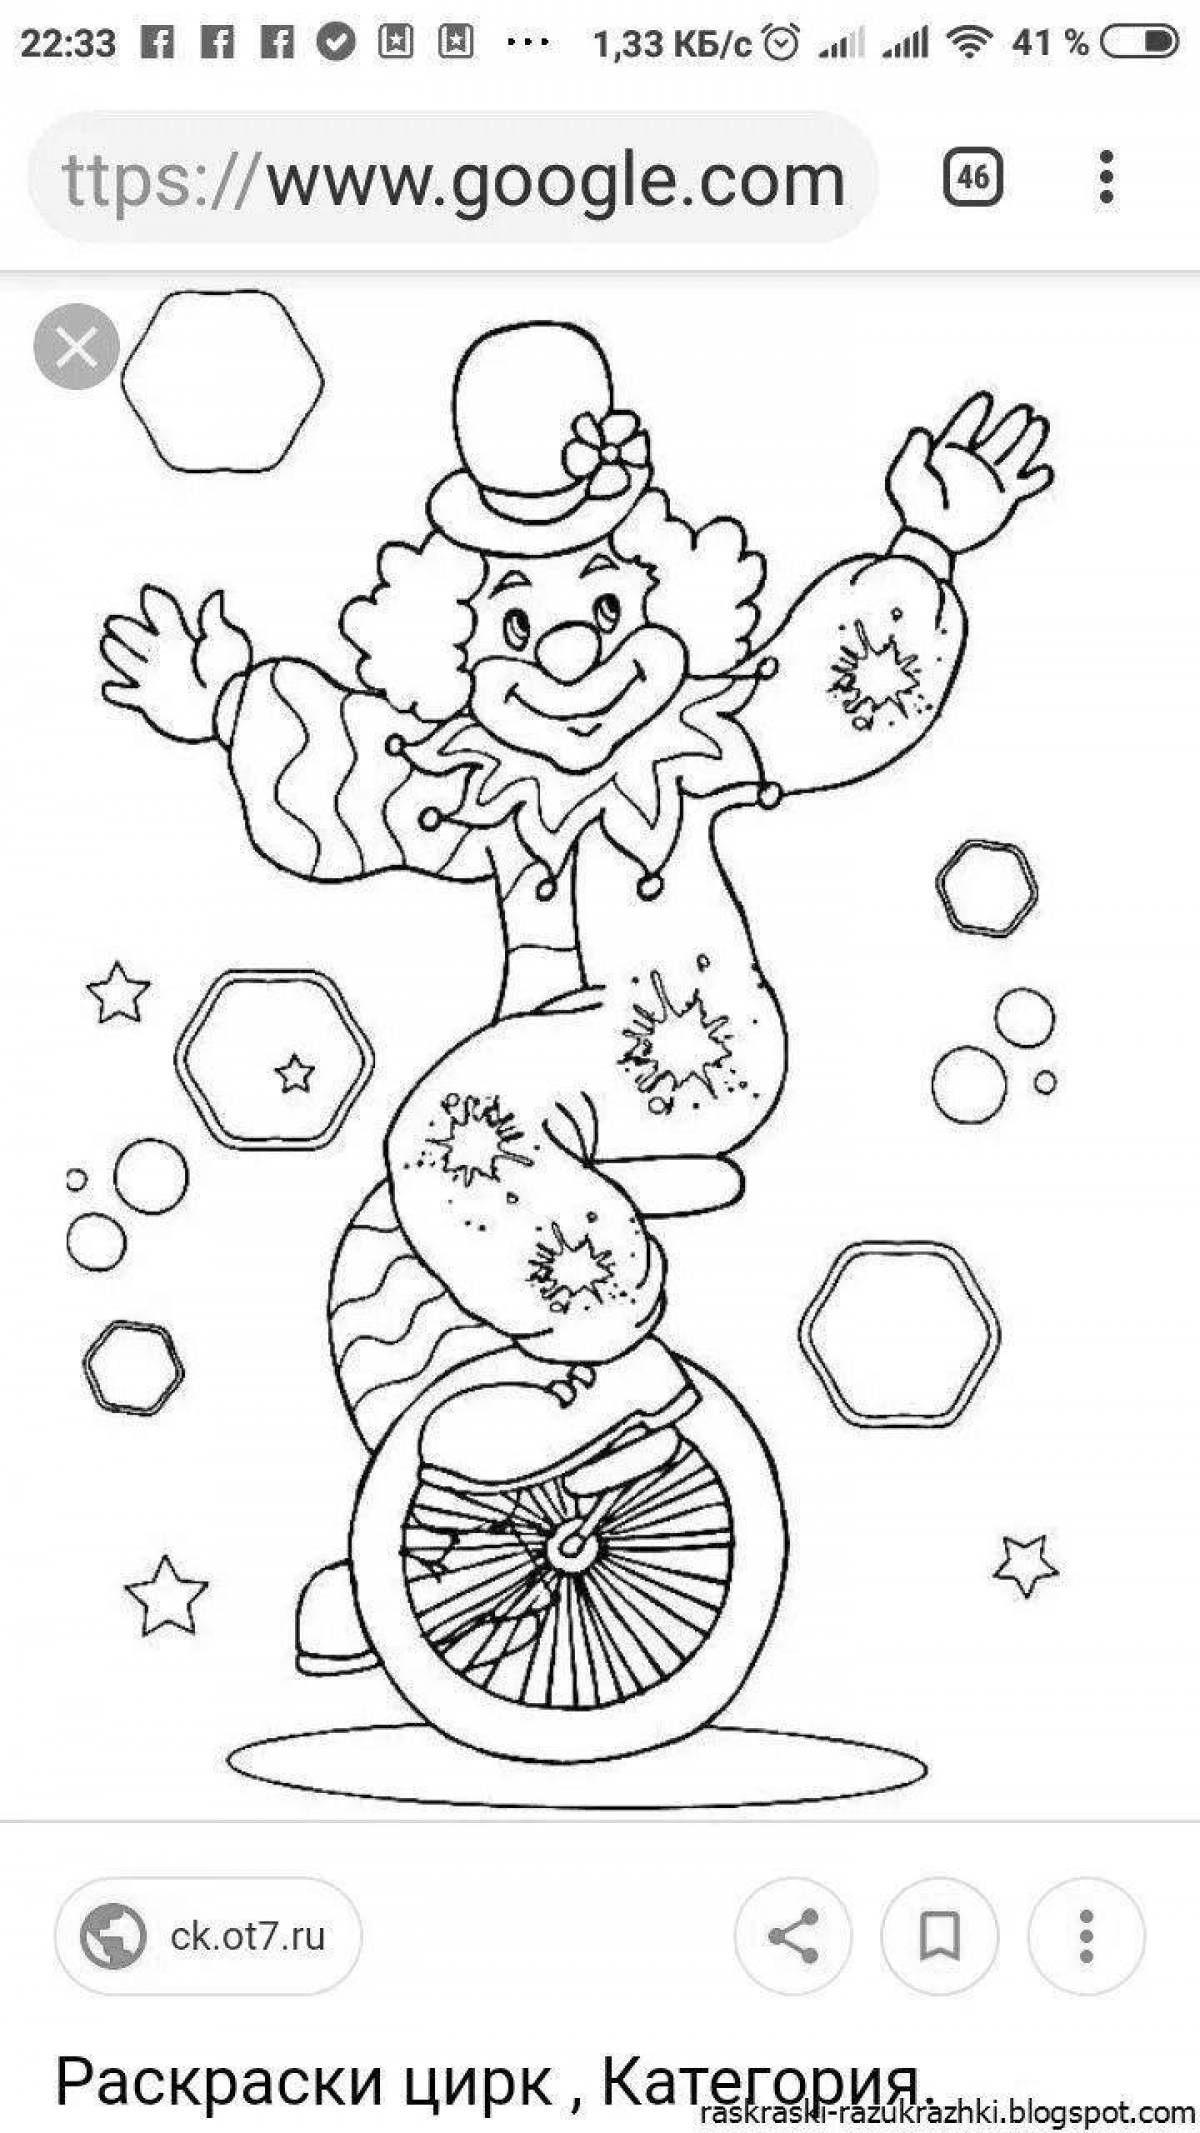 Увлекательная цирковая раскраска для детей 7-8 лет